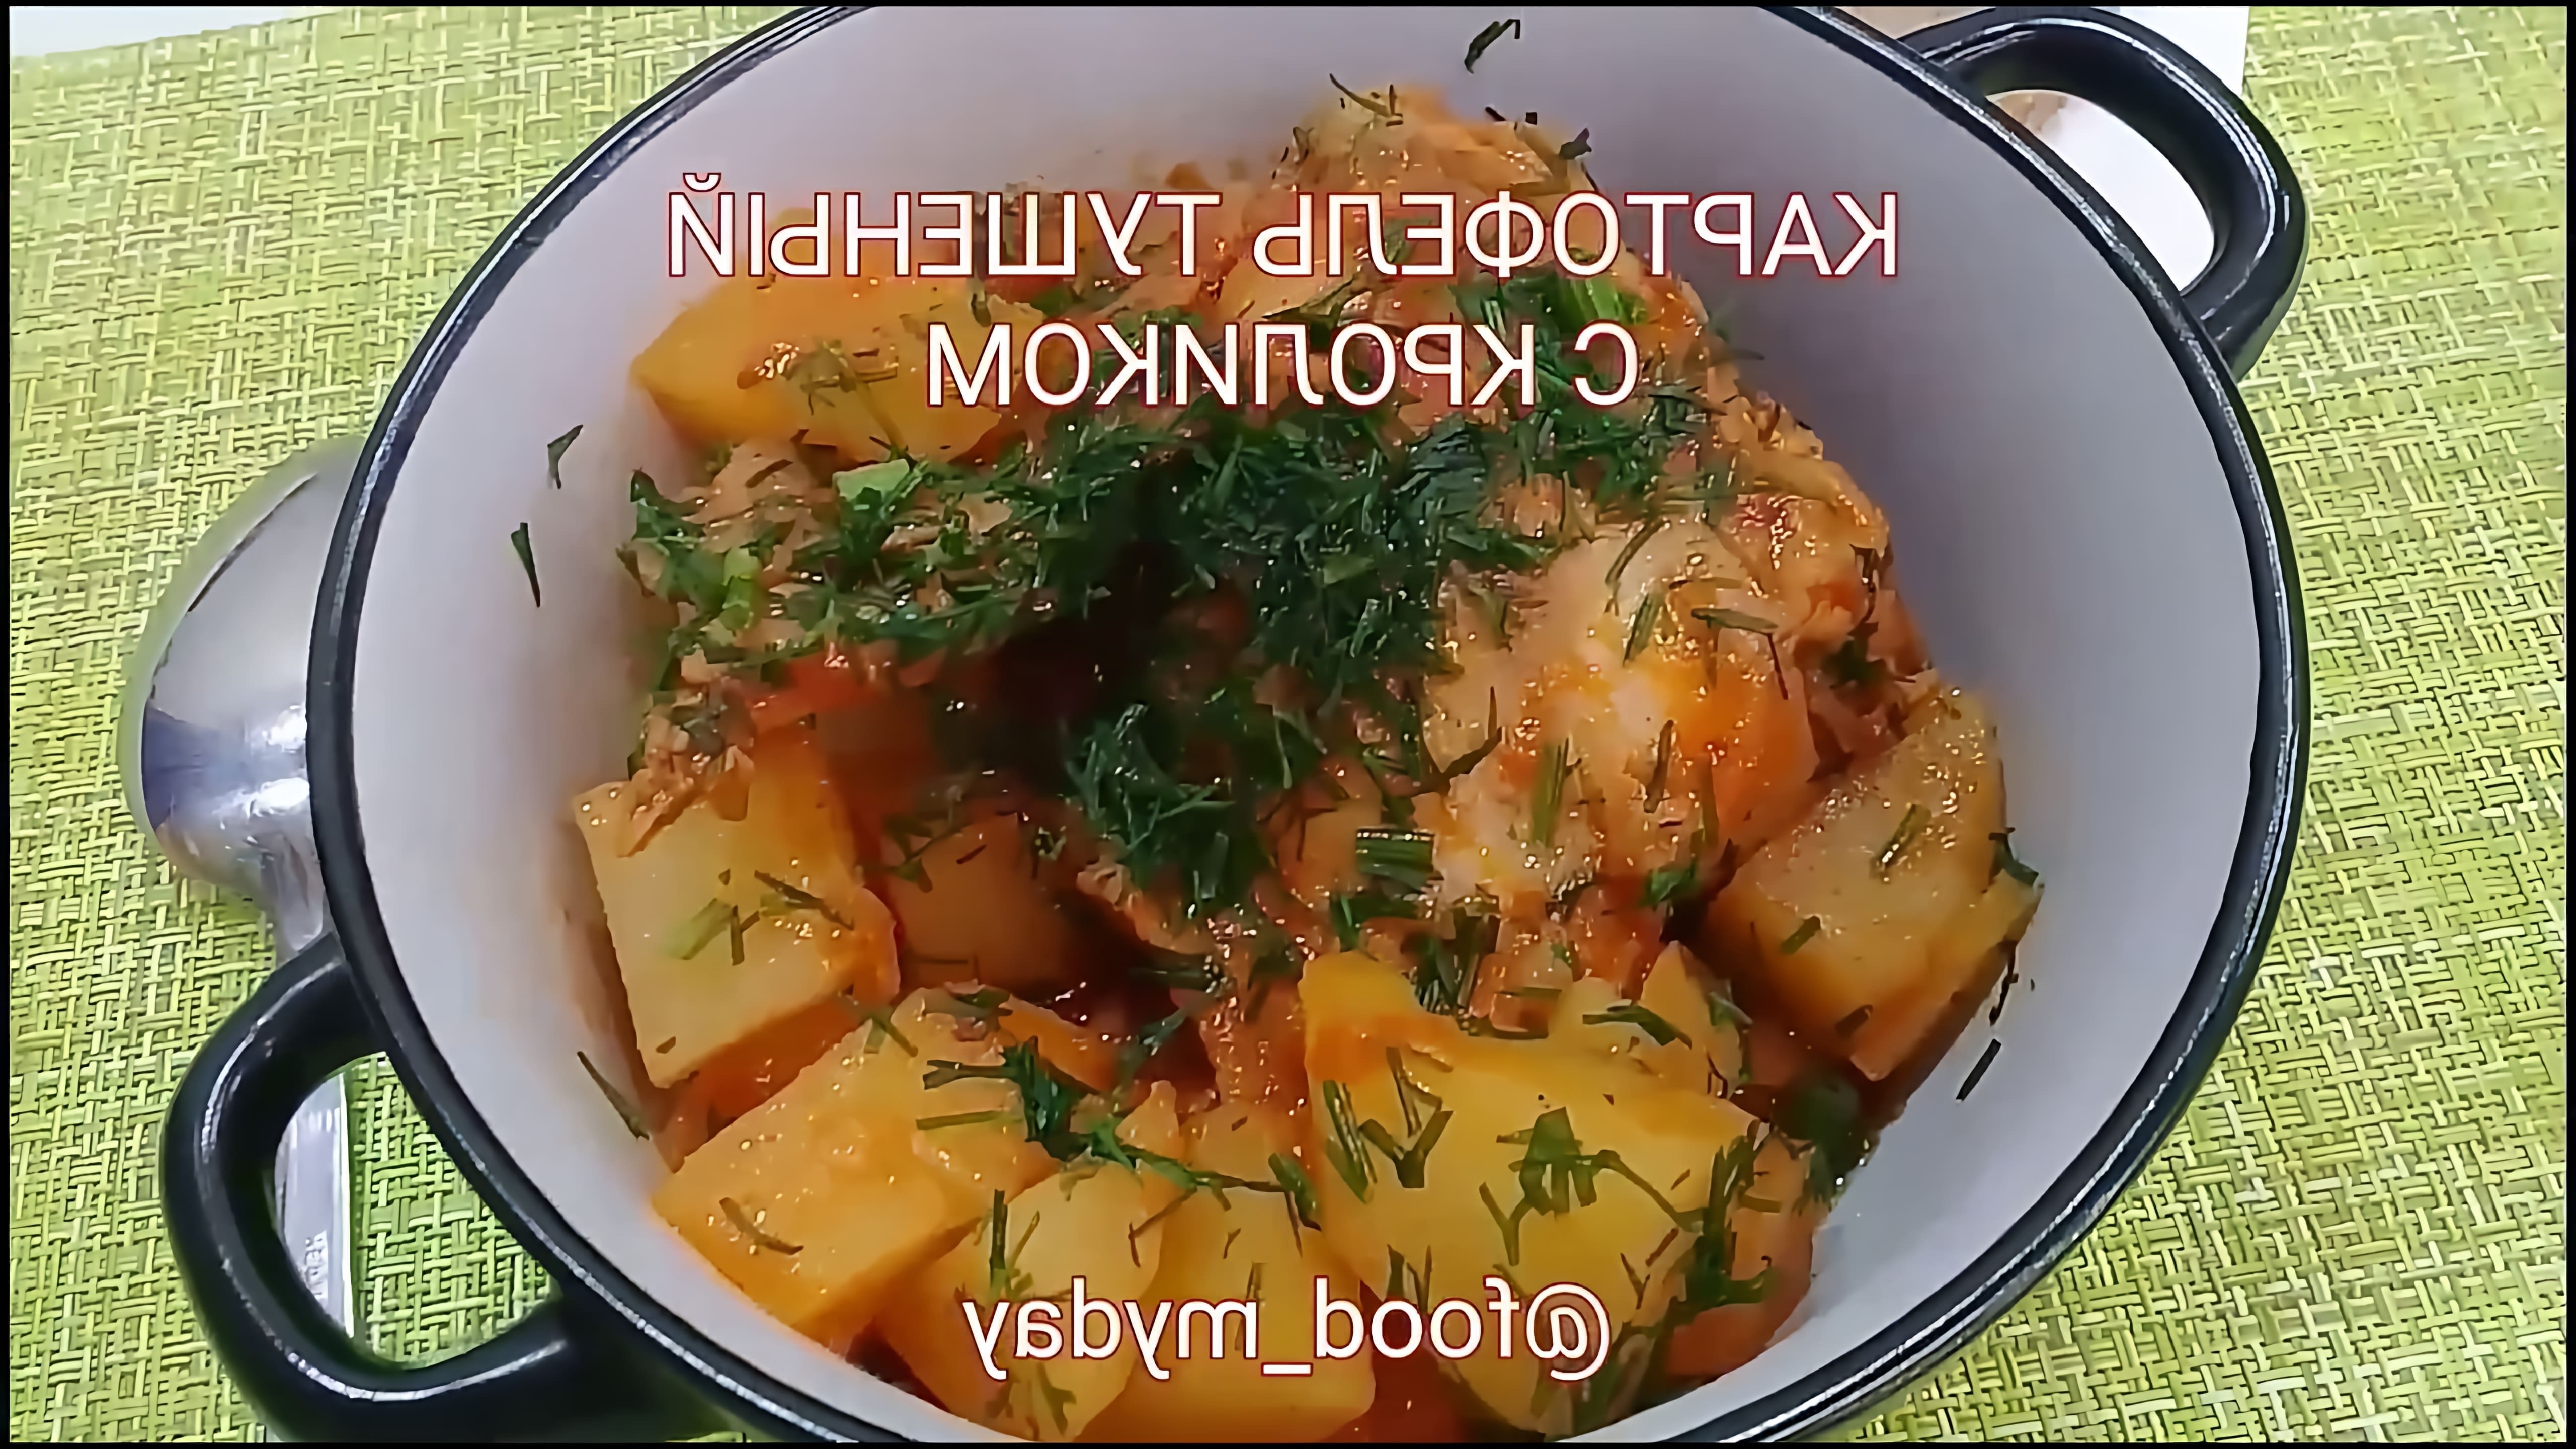 В этом видео-ролике показан процесс приготовления вкусного и полезного блюда - картофеля, тушеного с кроликом